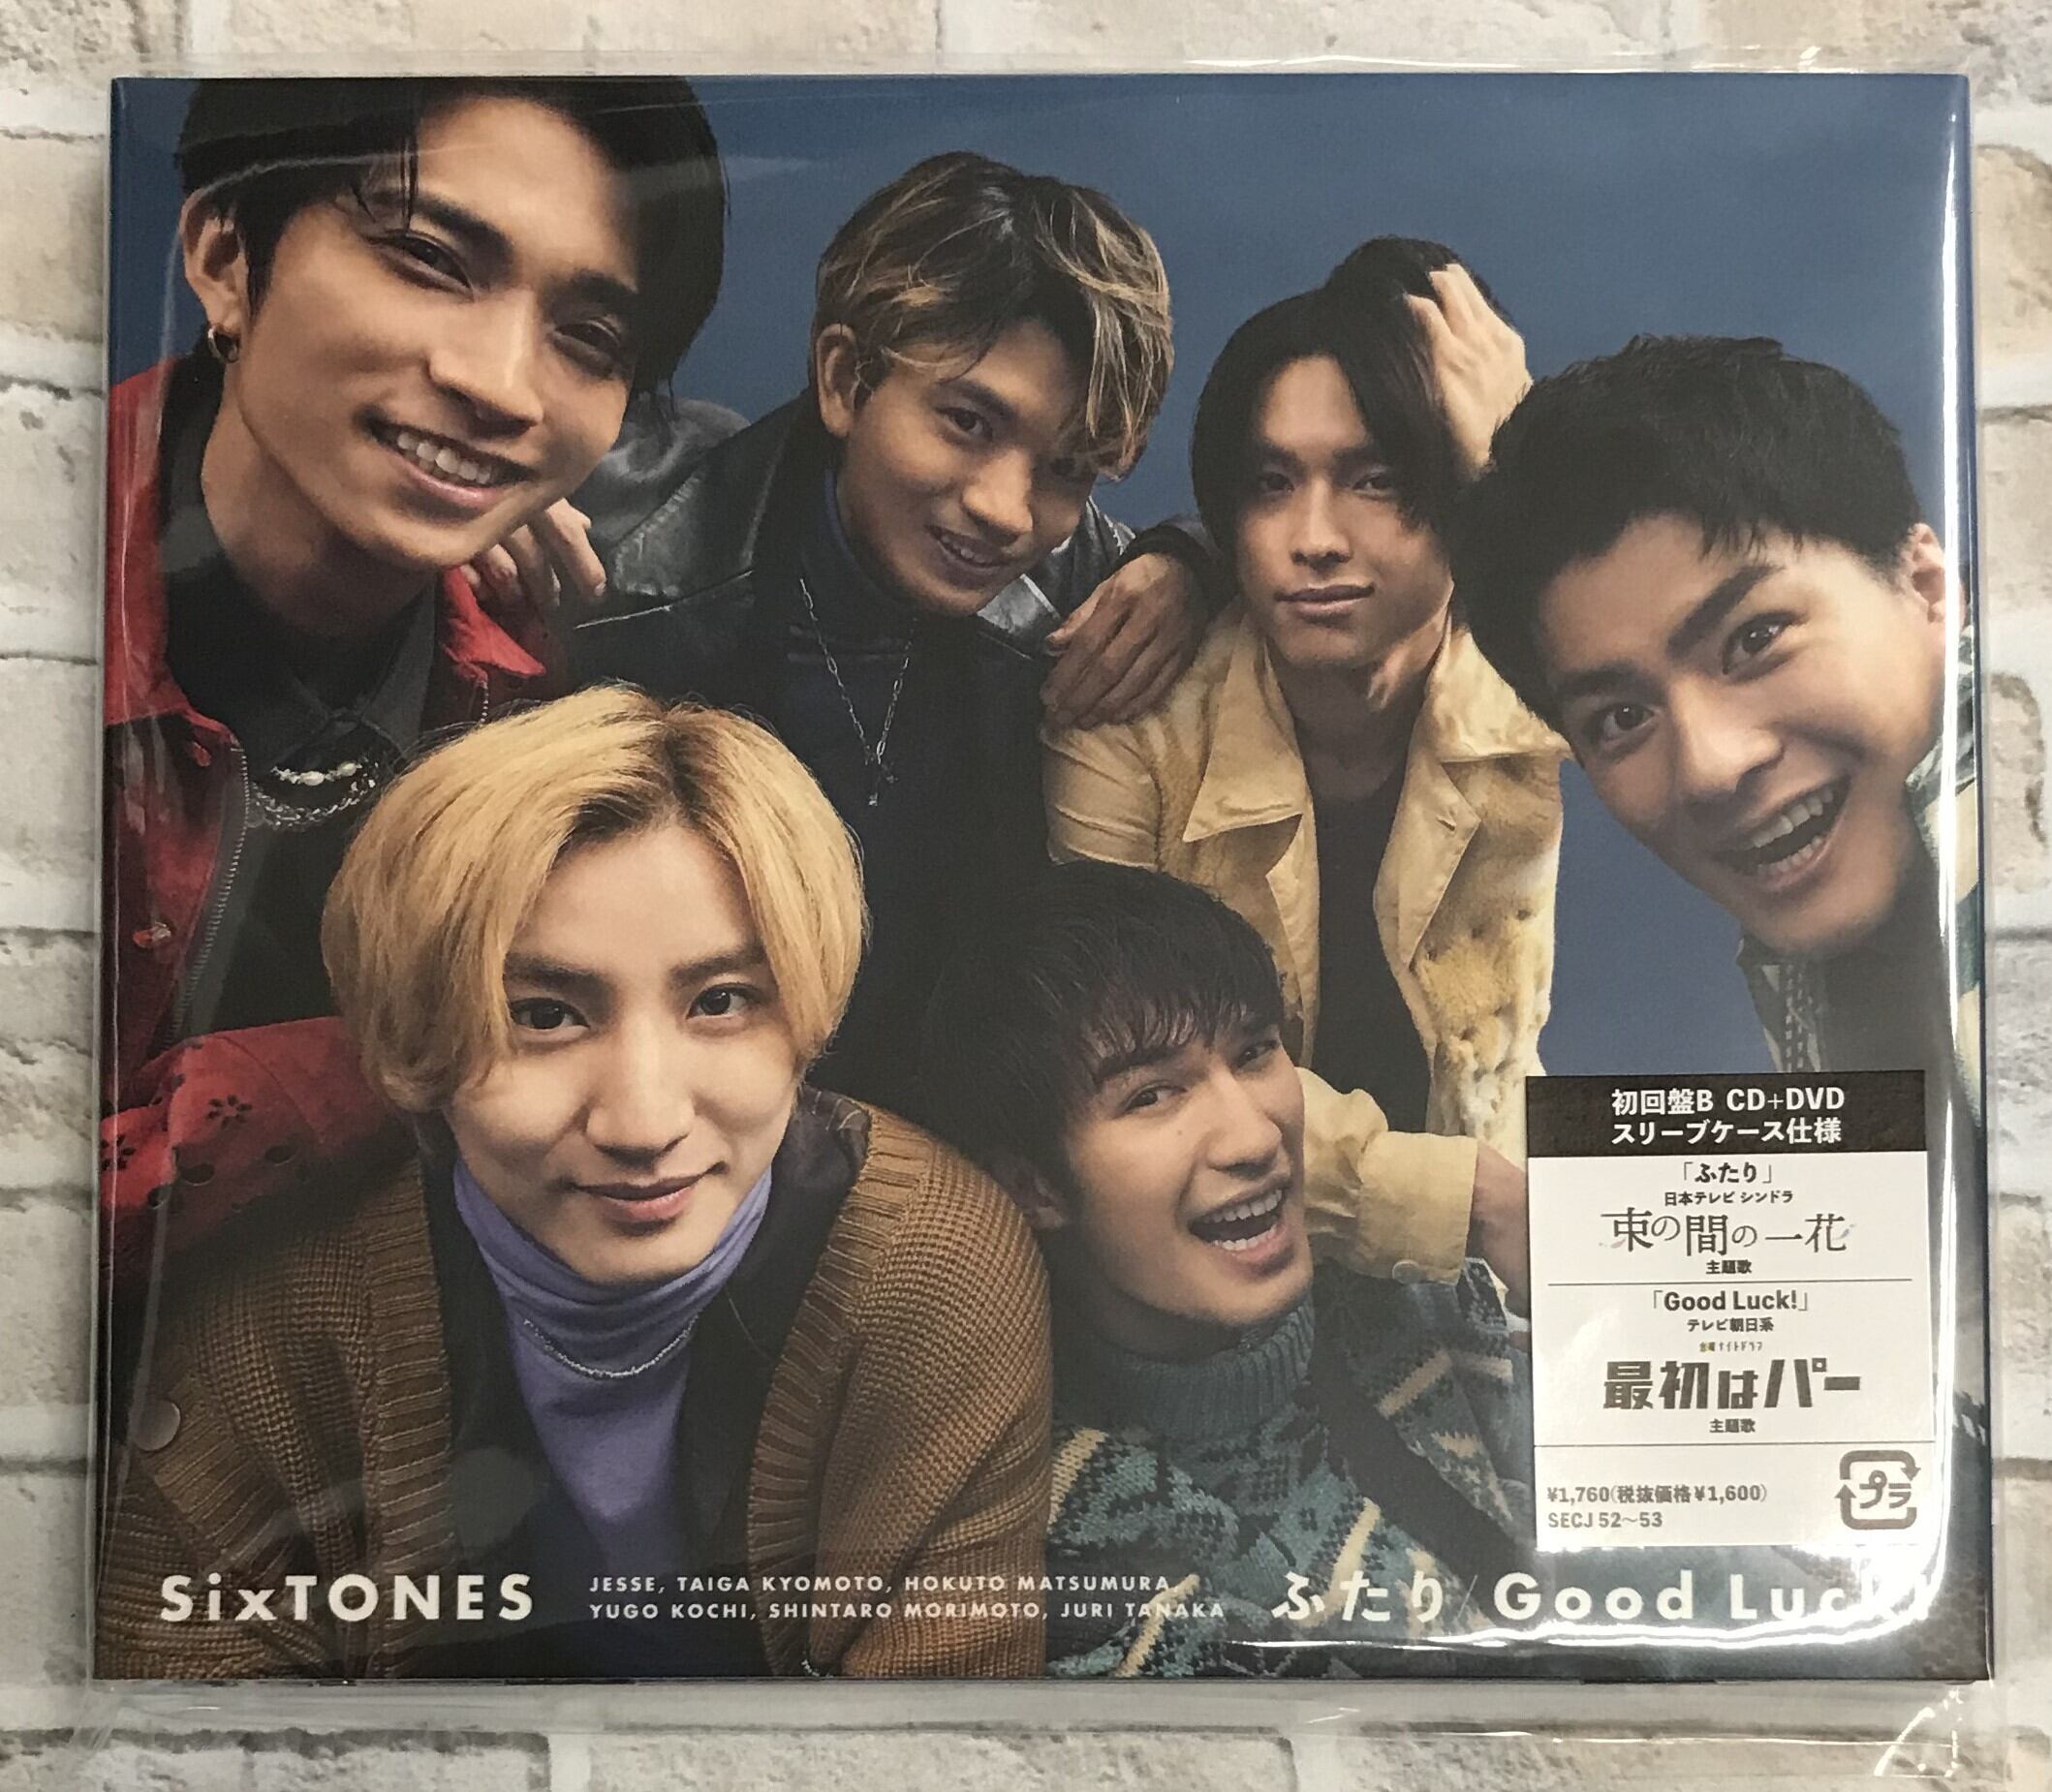 SixTONES 「こっから」初回盤B DVD - 国内アーティスト